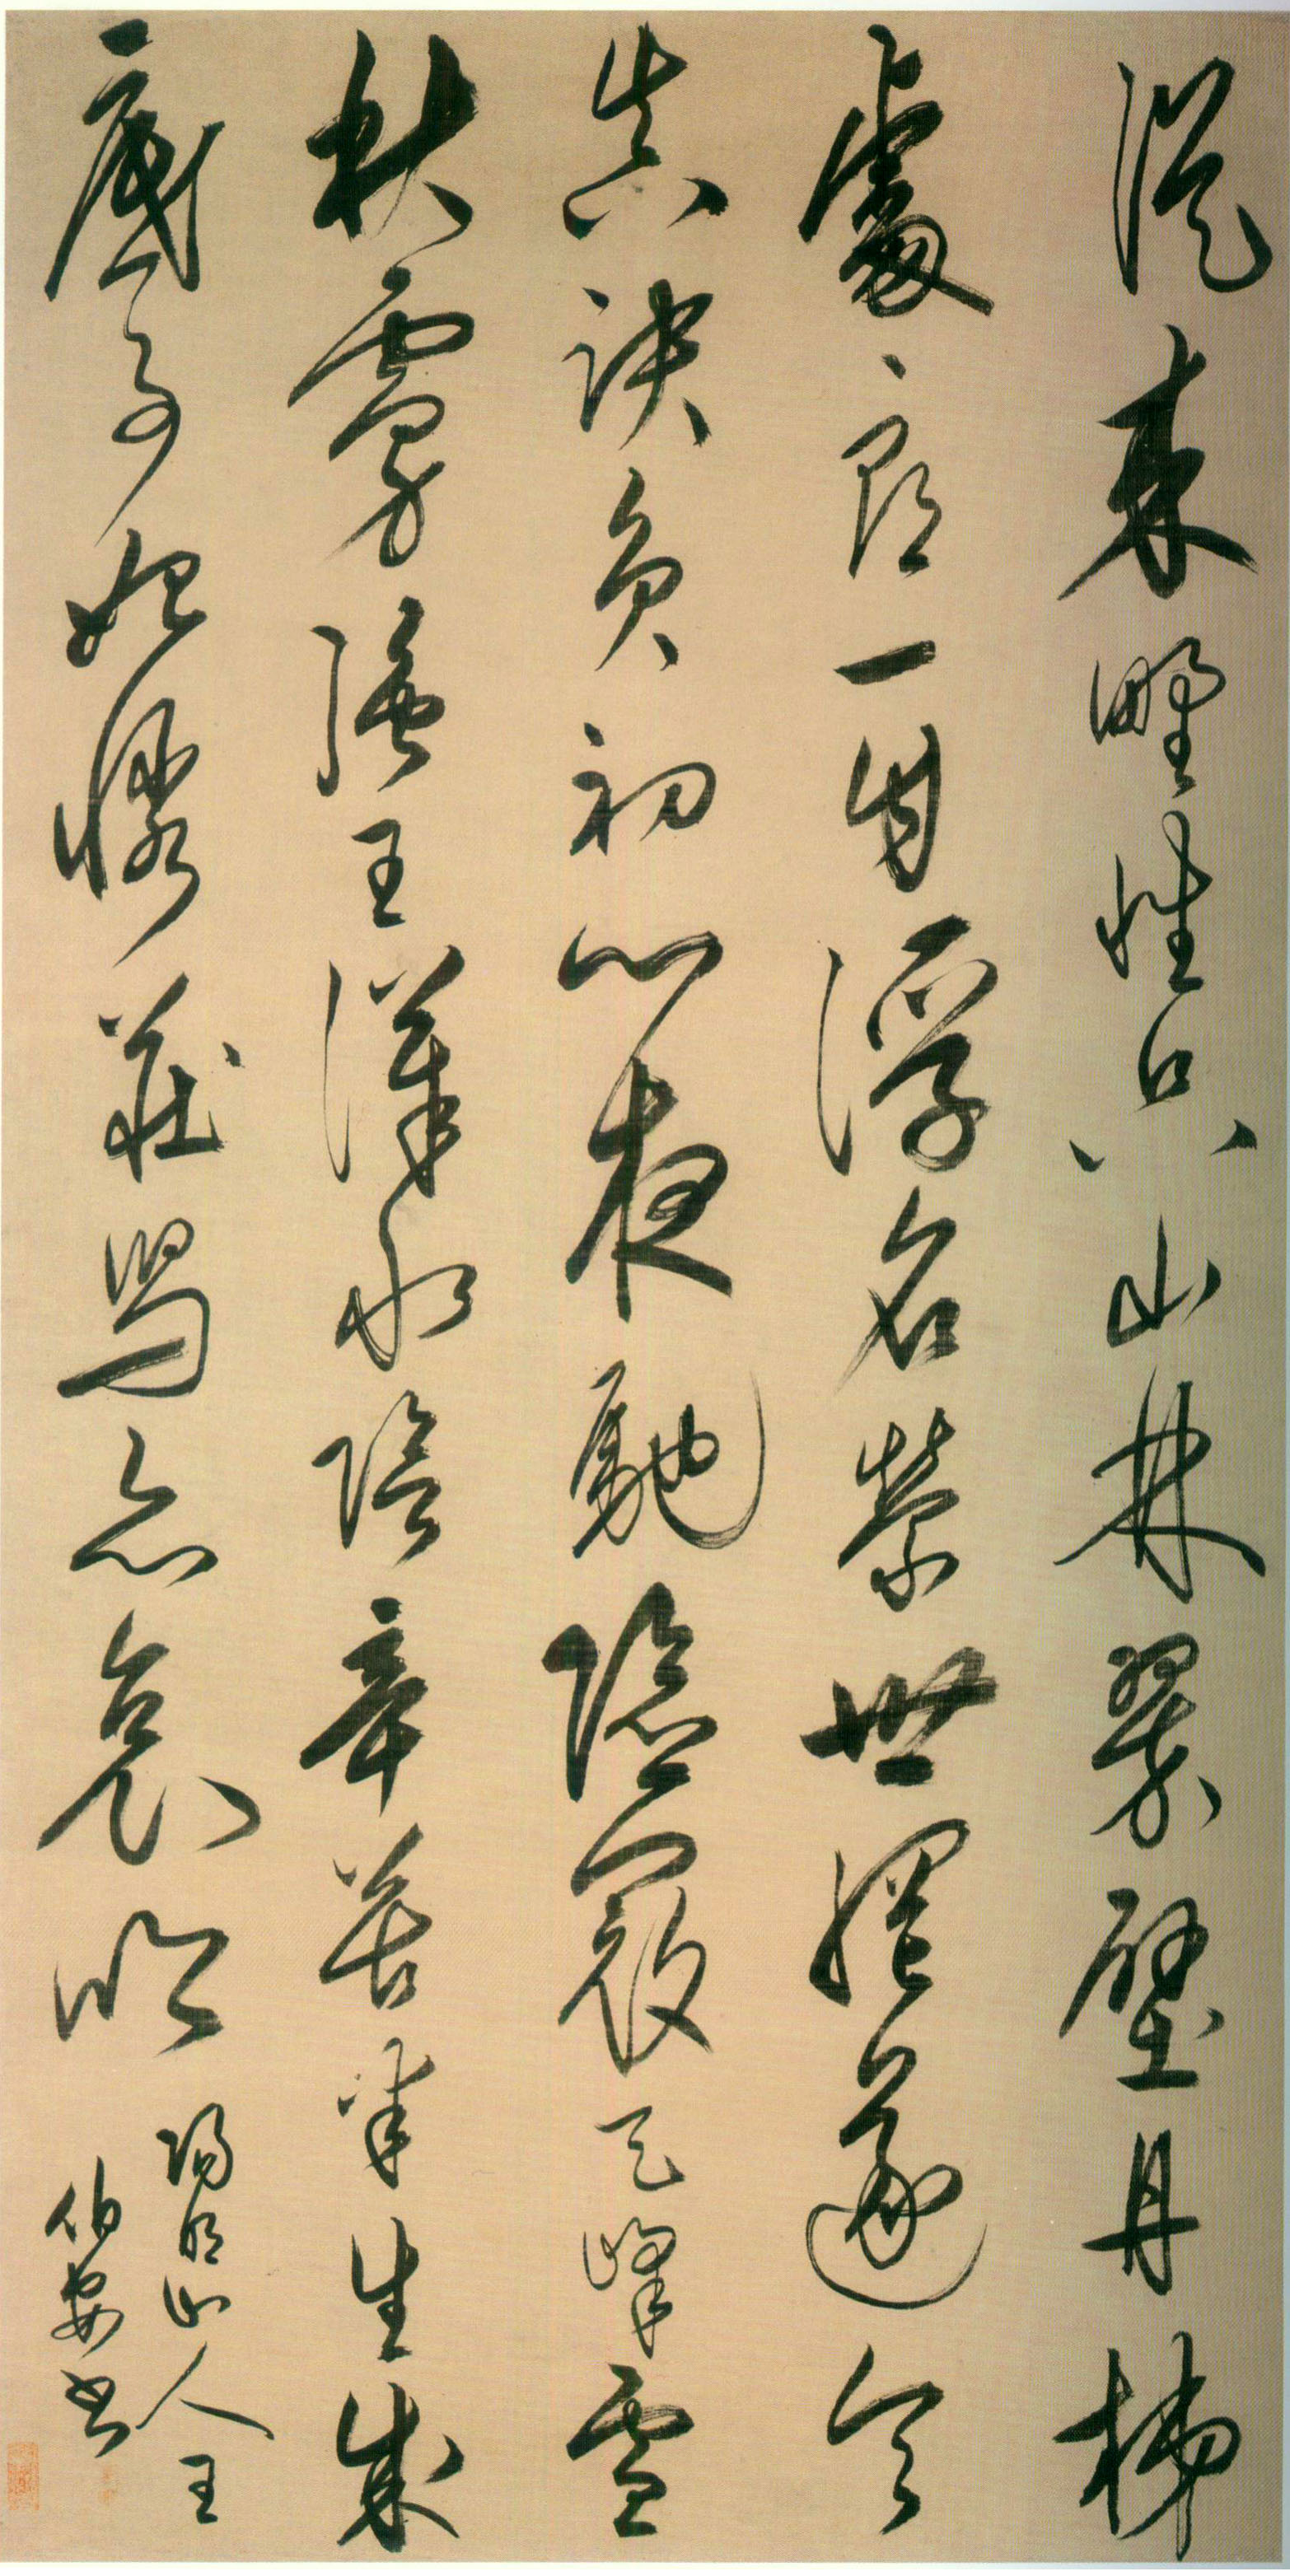 【明代书法】王守仁《行书即事漫述四首之一诗轴》 上海博物馆藏